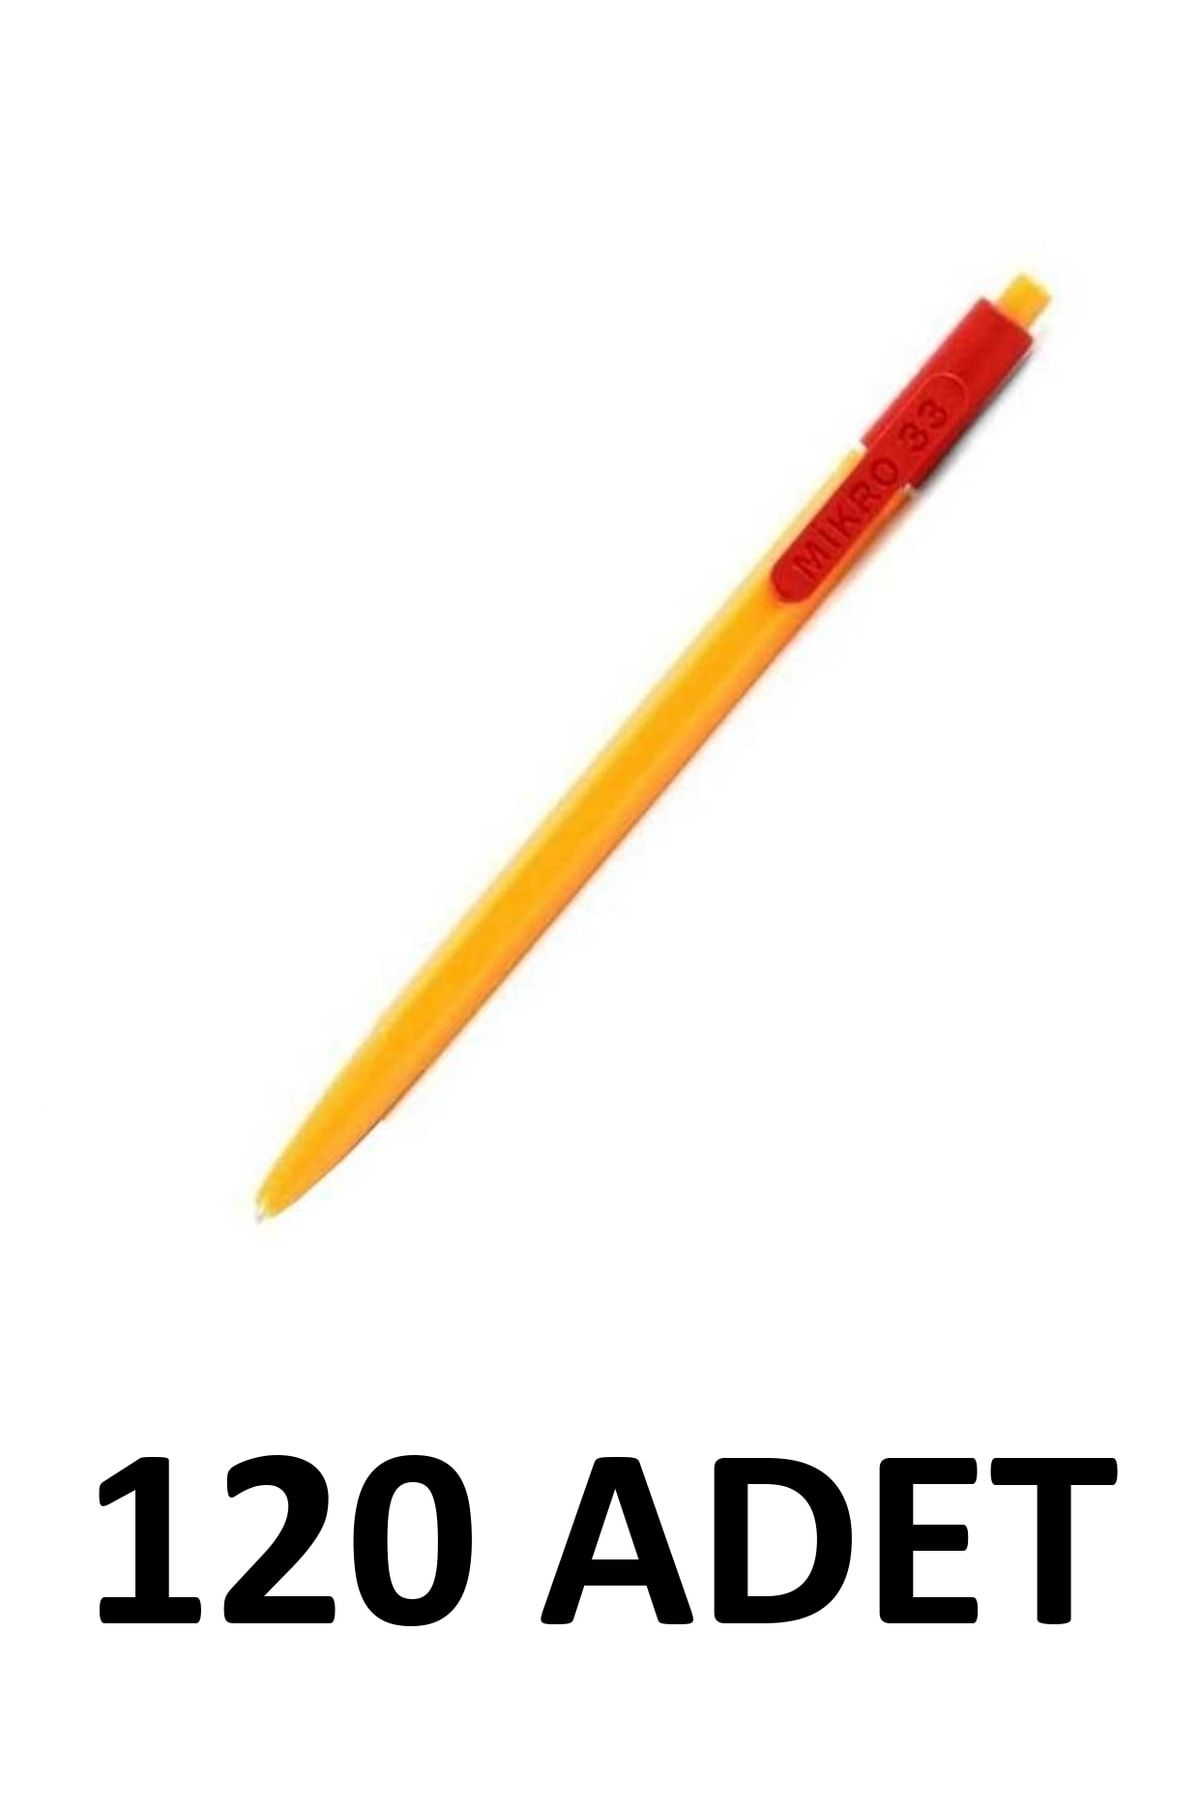 Mikro 120 Adet Basmalı Tükenmez Kalem Kahveci Kalemi Kırmızı M-33